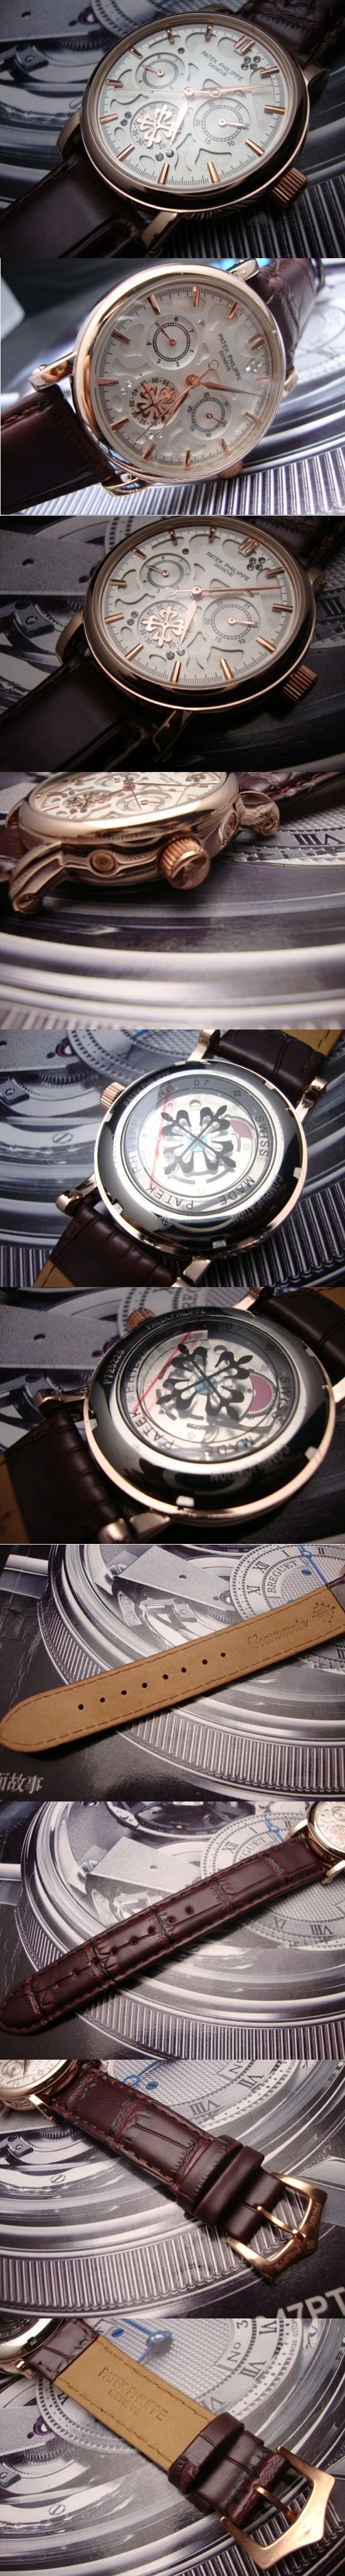 おしゃれなブランド時計がPATEK PHILIPPE-パテック フィリップ腕時計 パテック フィリップ 男/女腕時計 PATEK-PHILIPPE-N-001A を提供します.